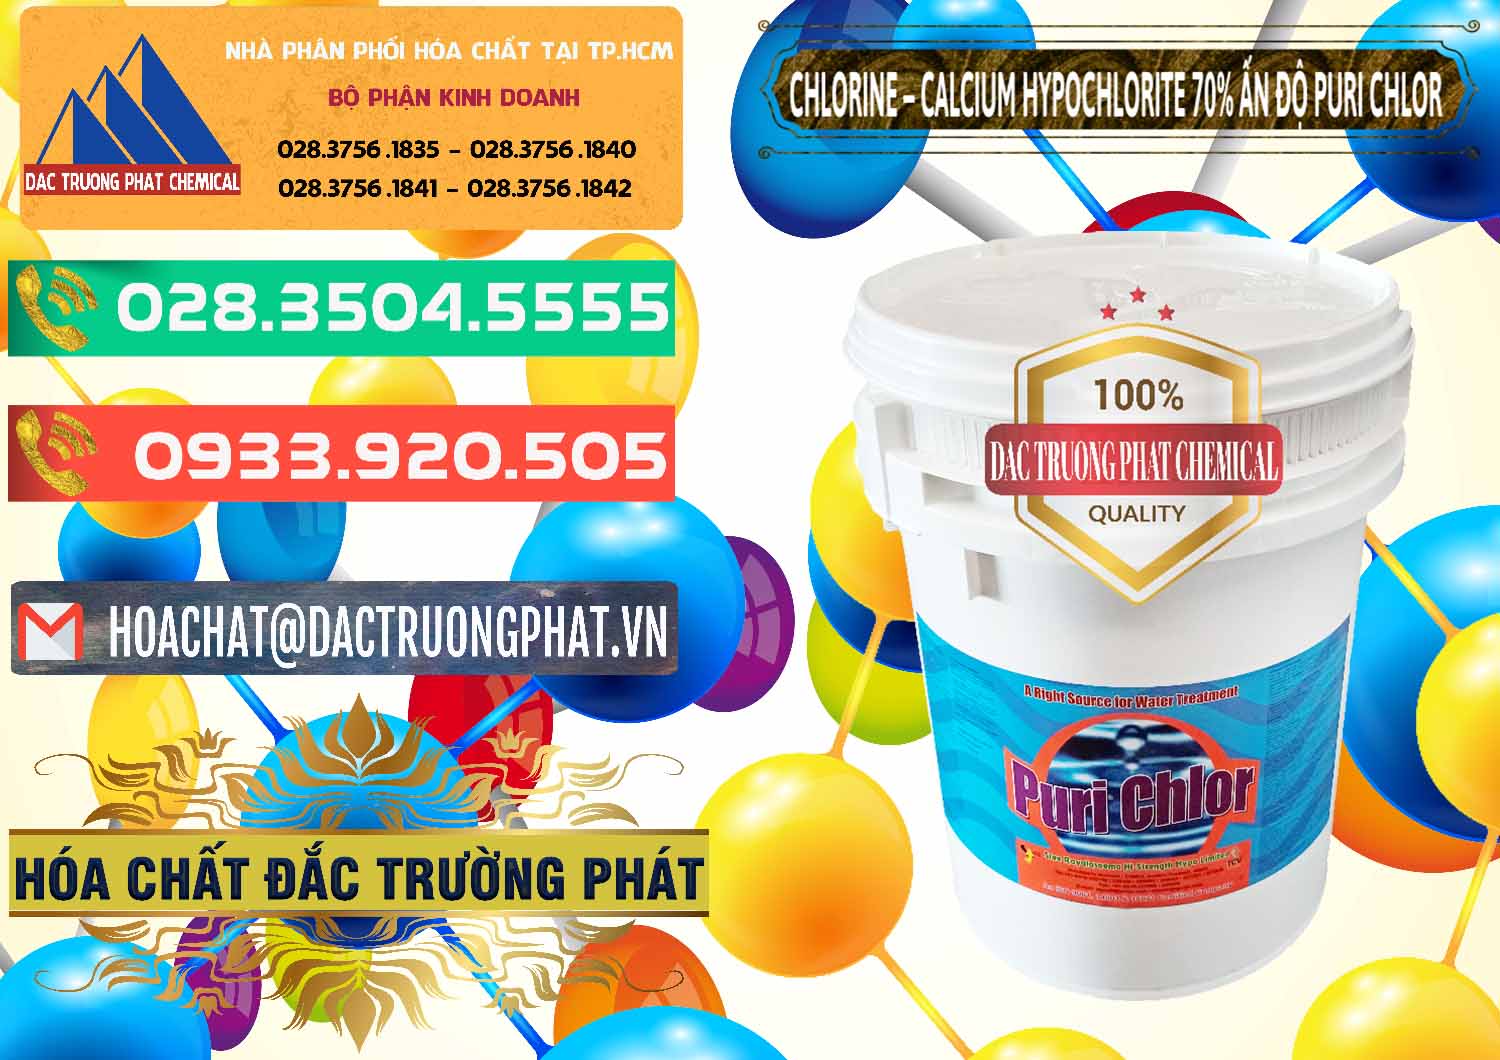 Chuyên bán _ cung cấp Chlorine – Clorin 70% Puri Chlo Ấn Độ India - 0123 - Đơn vị chuyên kinh doanh ( cung cấp ) hóa chất tại TP.HCM - congtyhoachat.com.vn